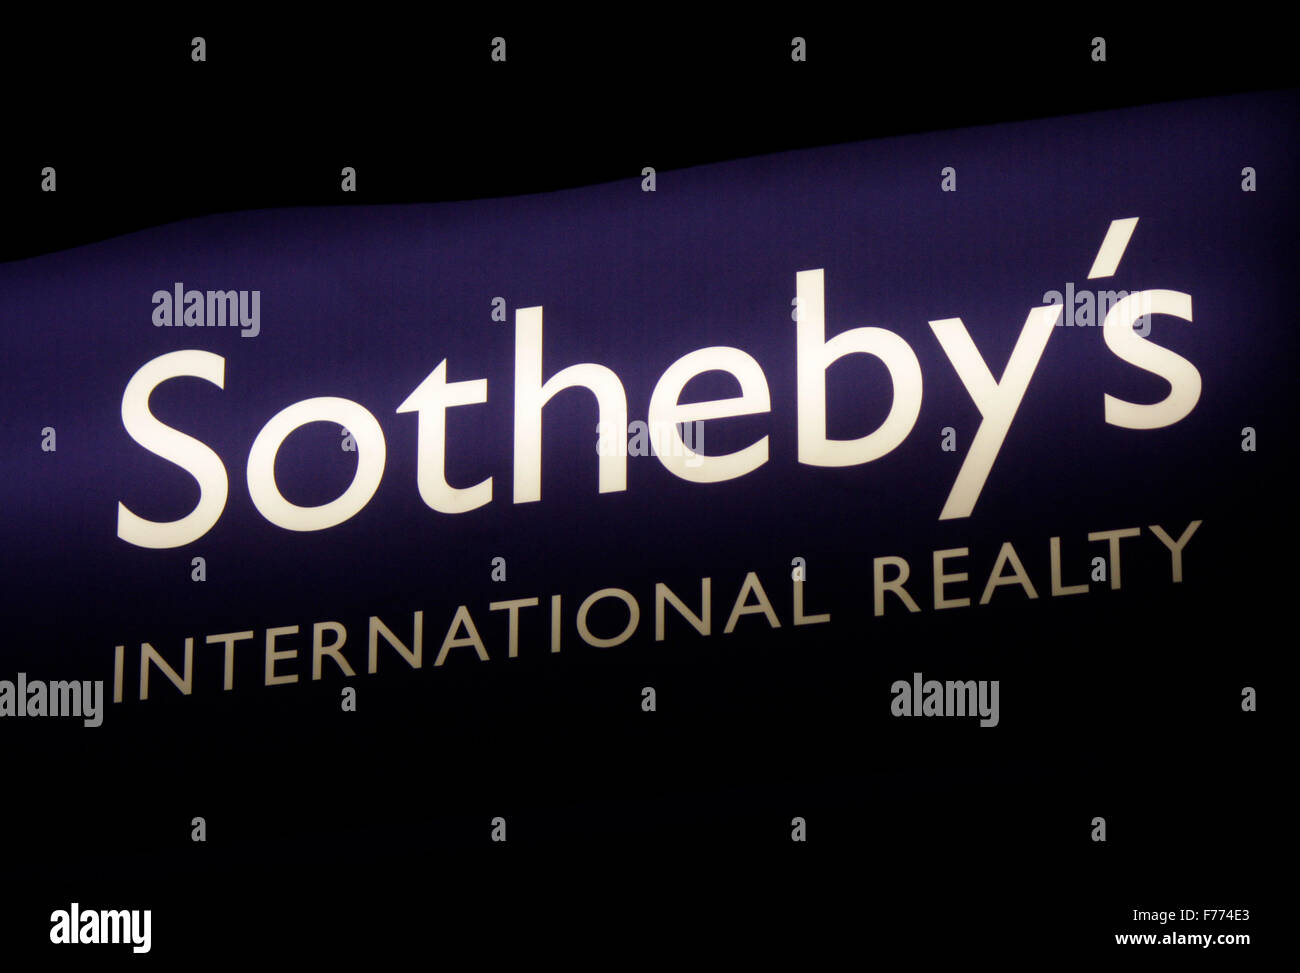 Markennamen: "Sothebys International Realty', Chamonix, Frankrfeich. Stockfoto